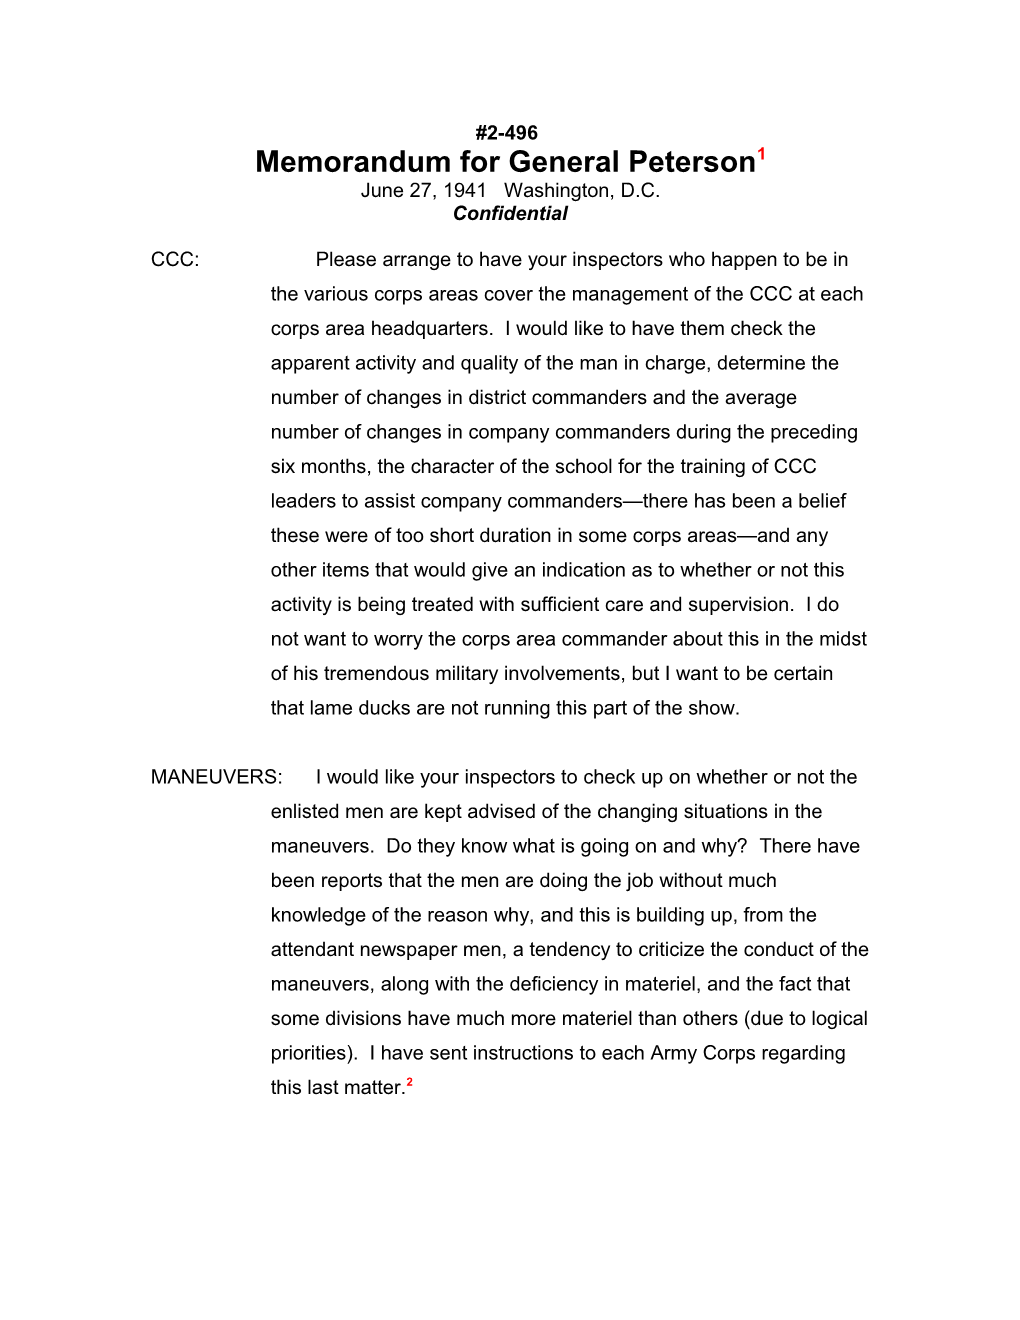 Memorandum for General Peterson1